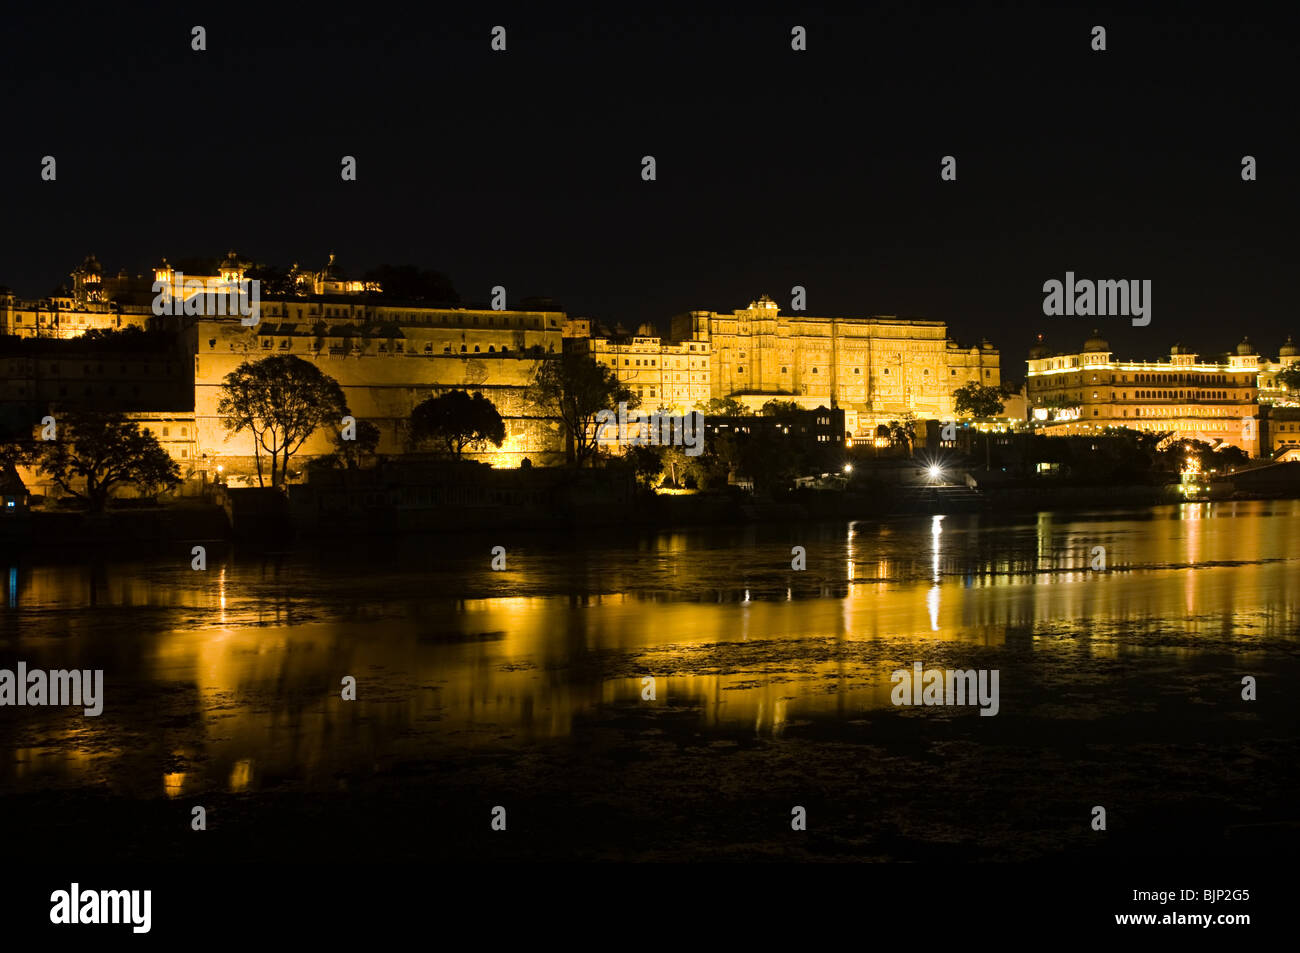 Night view of city palace and lake pichola Stock Photo